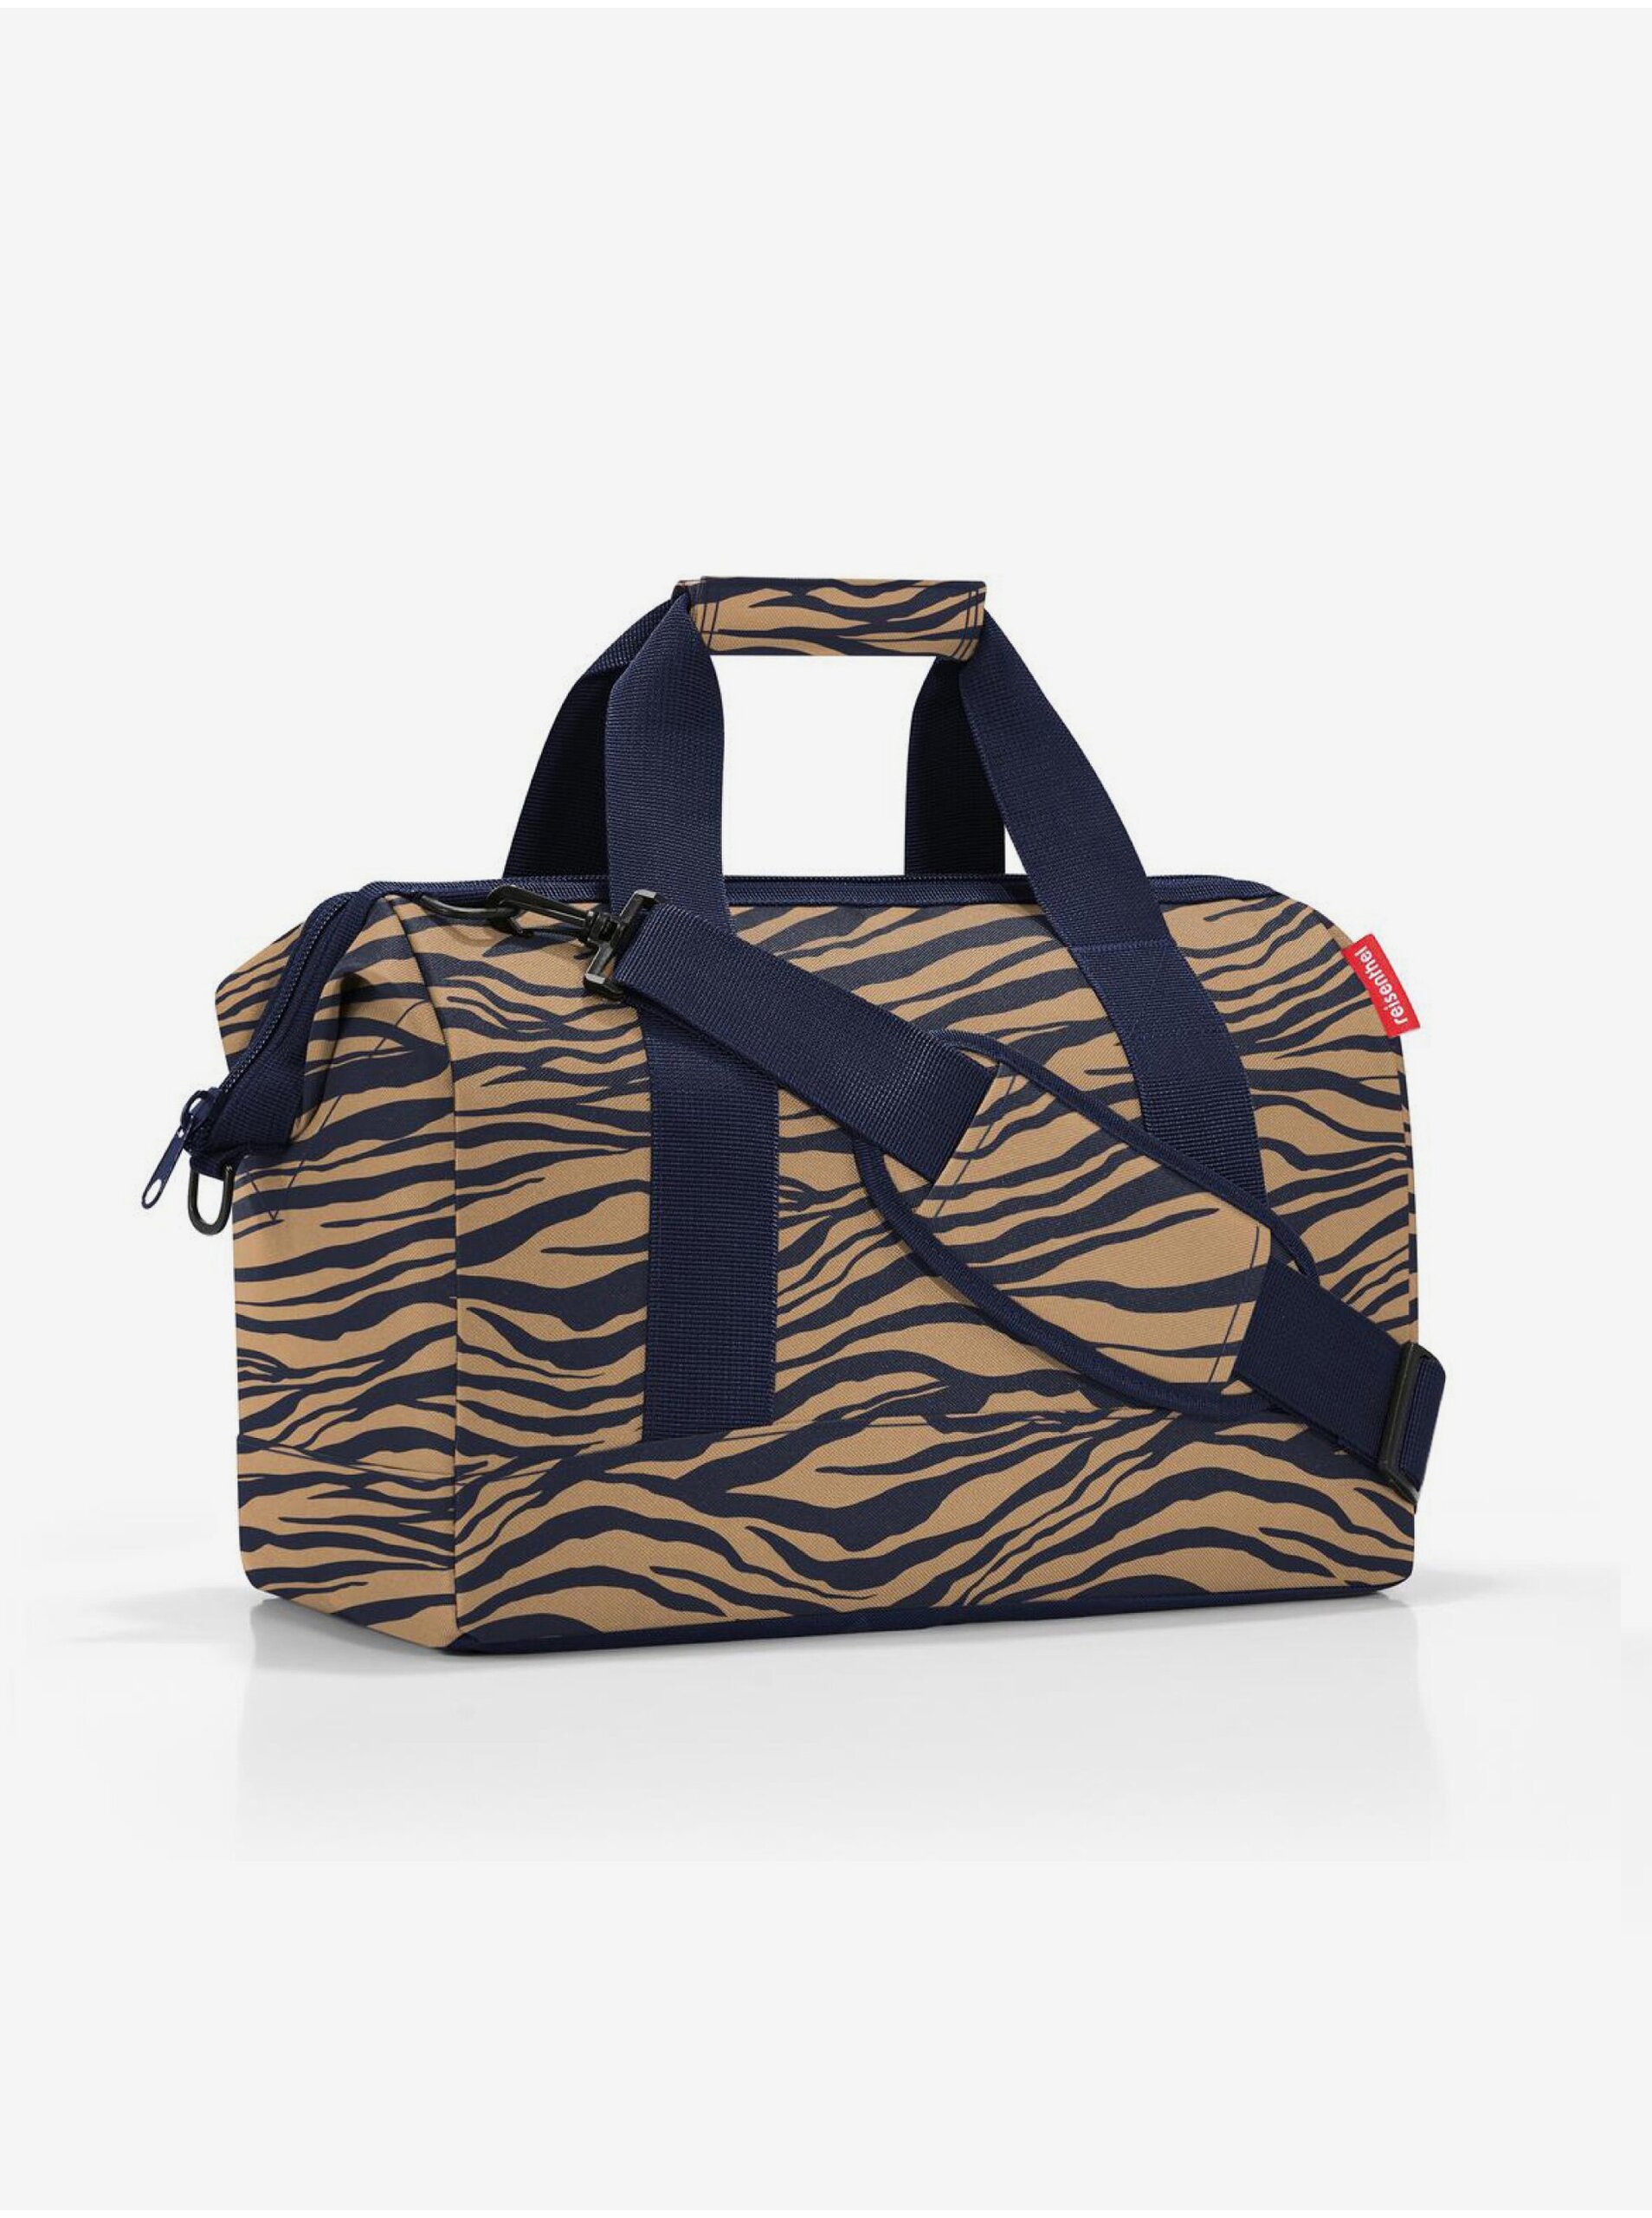 E-shop Modro-hnedá dámska cestovná taška so zvieracím vzorom Reisenthel Allrounder M Sumatra